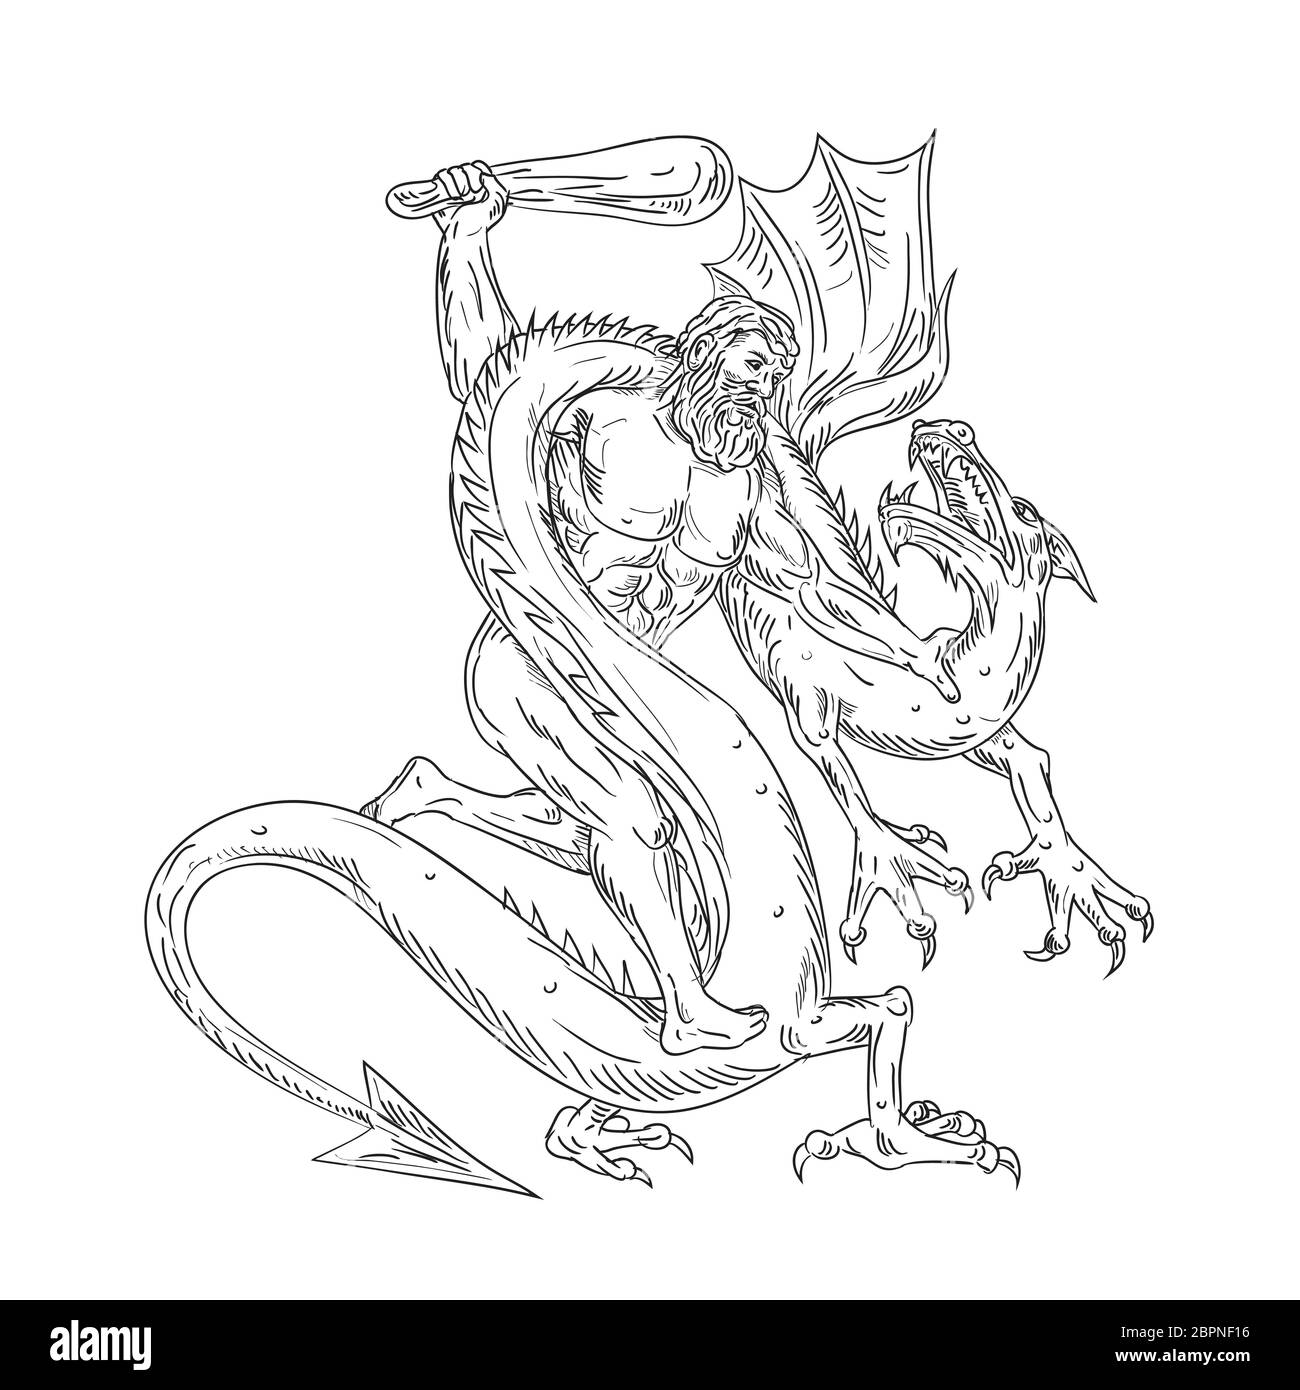 Dibujo Dibujo Ilustración estilo de Hércules, un héroe Romano y el equivalente del dios griego Heracles, héroe divino lidiando un dragón medieval en i Foto de stock